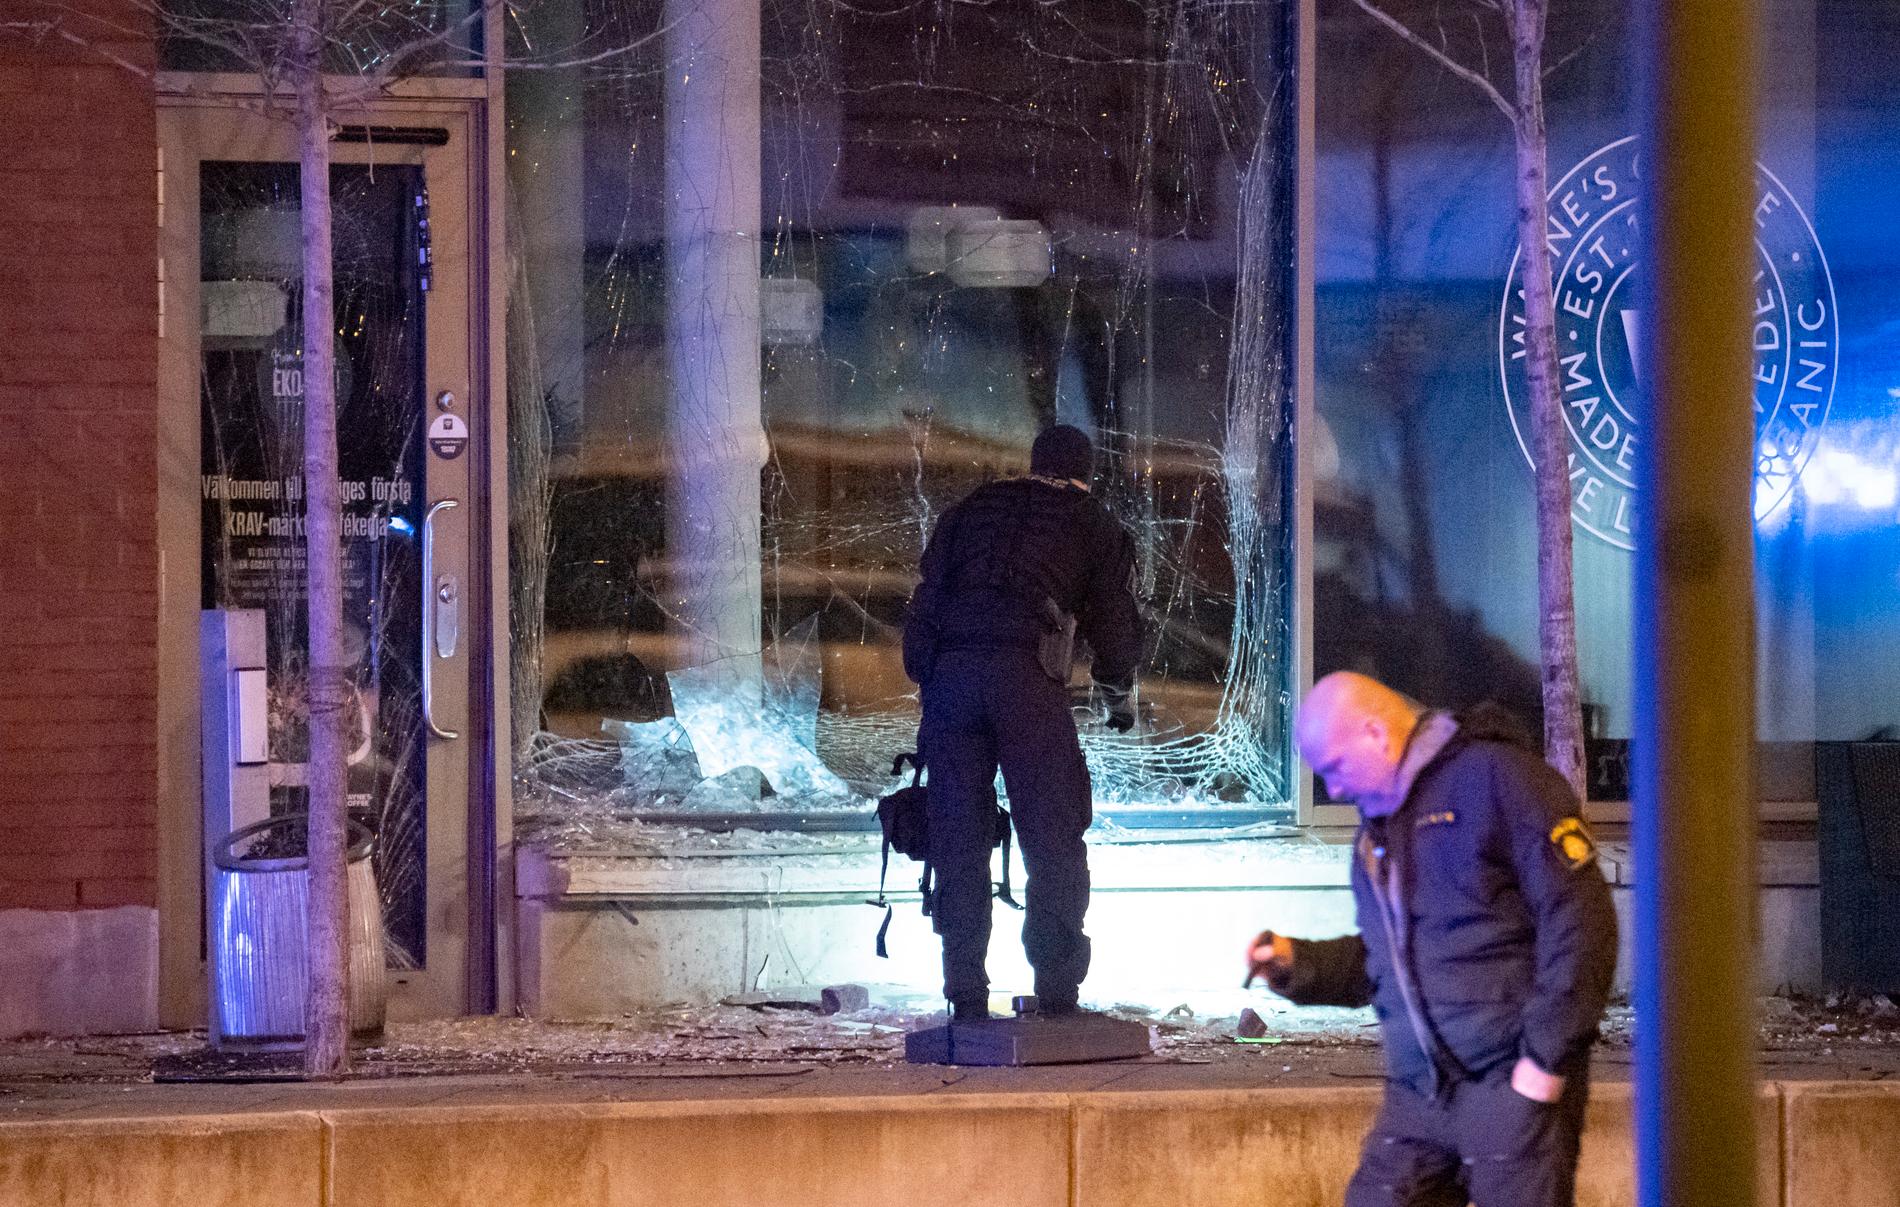 Polis på plats efter den kraftiga detonationen i centrala Malmö.